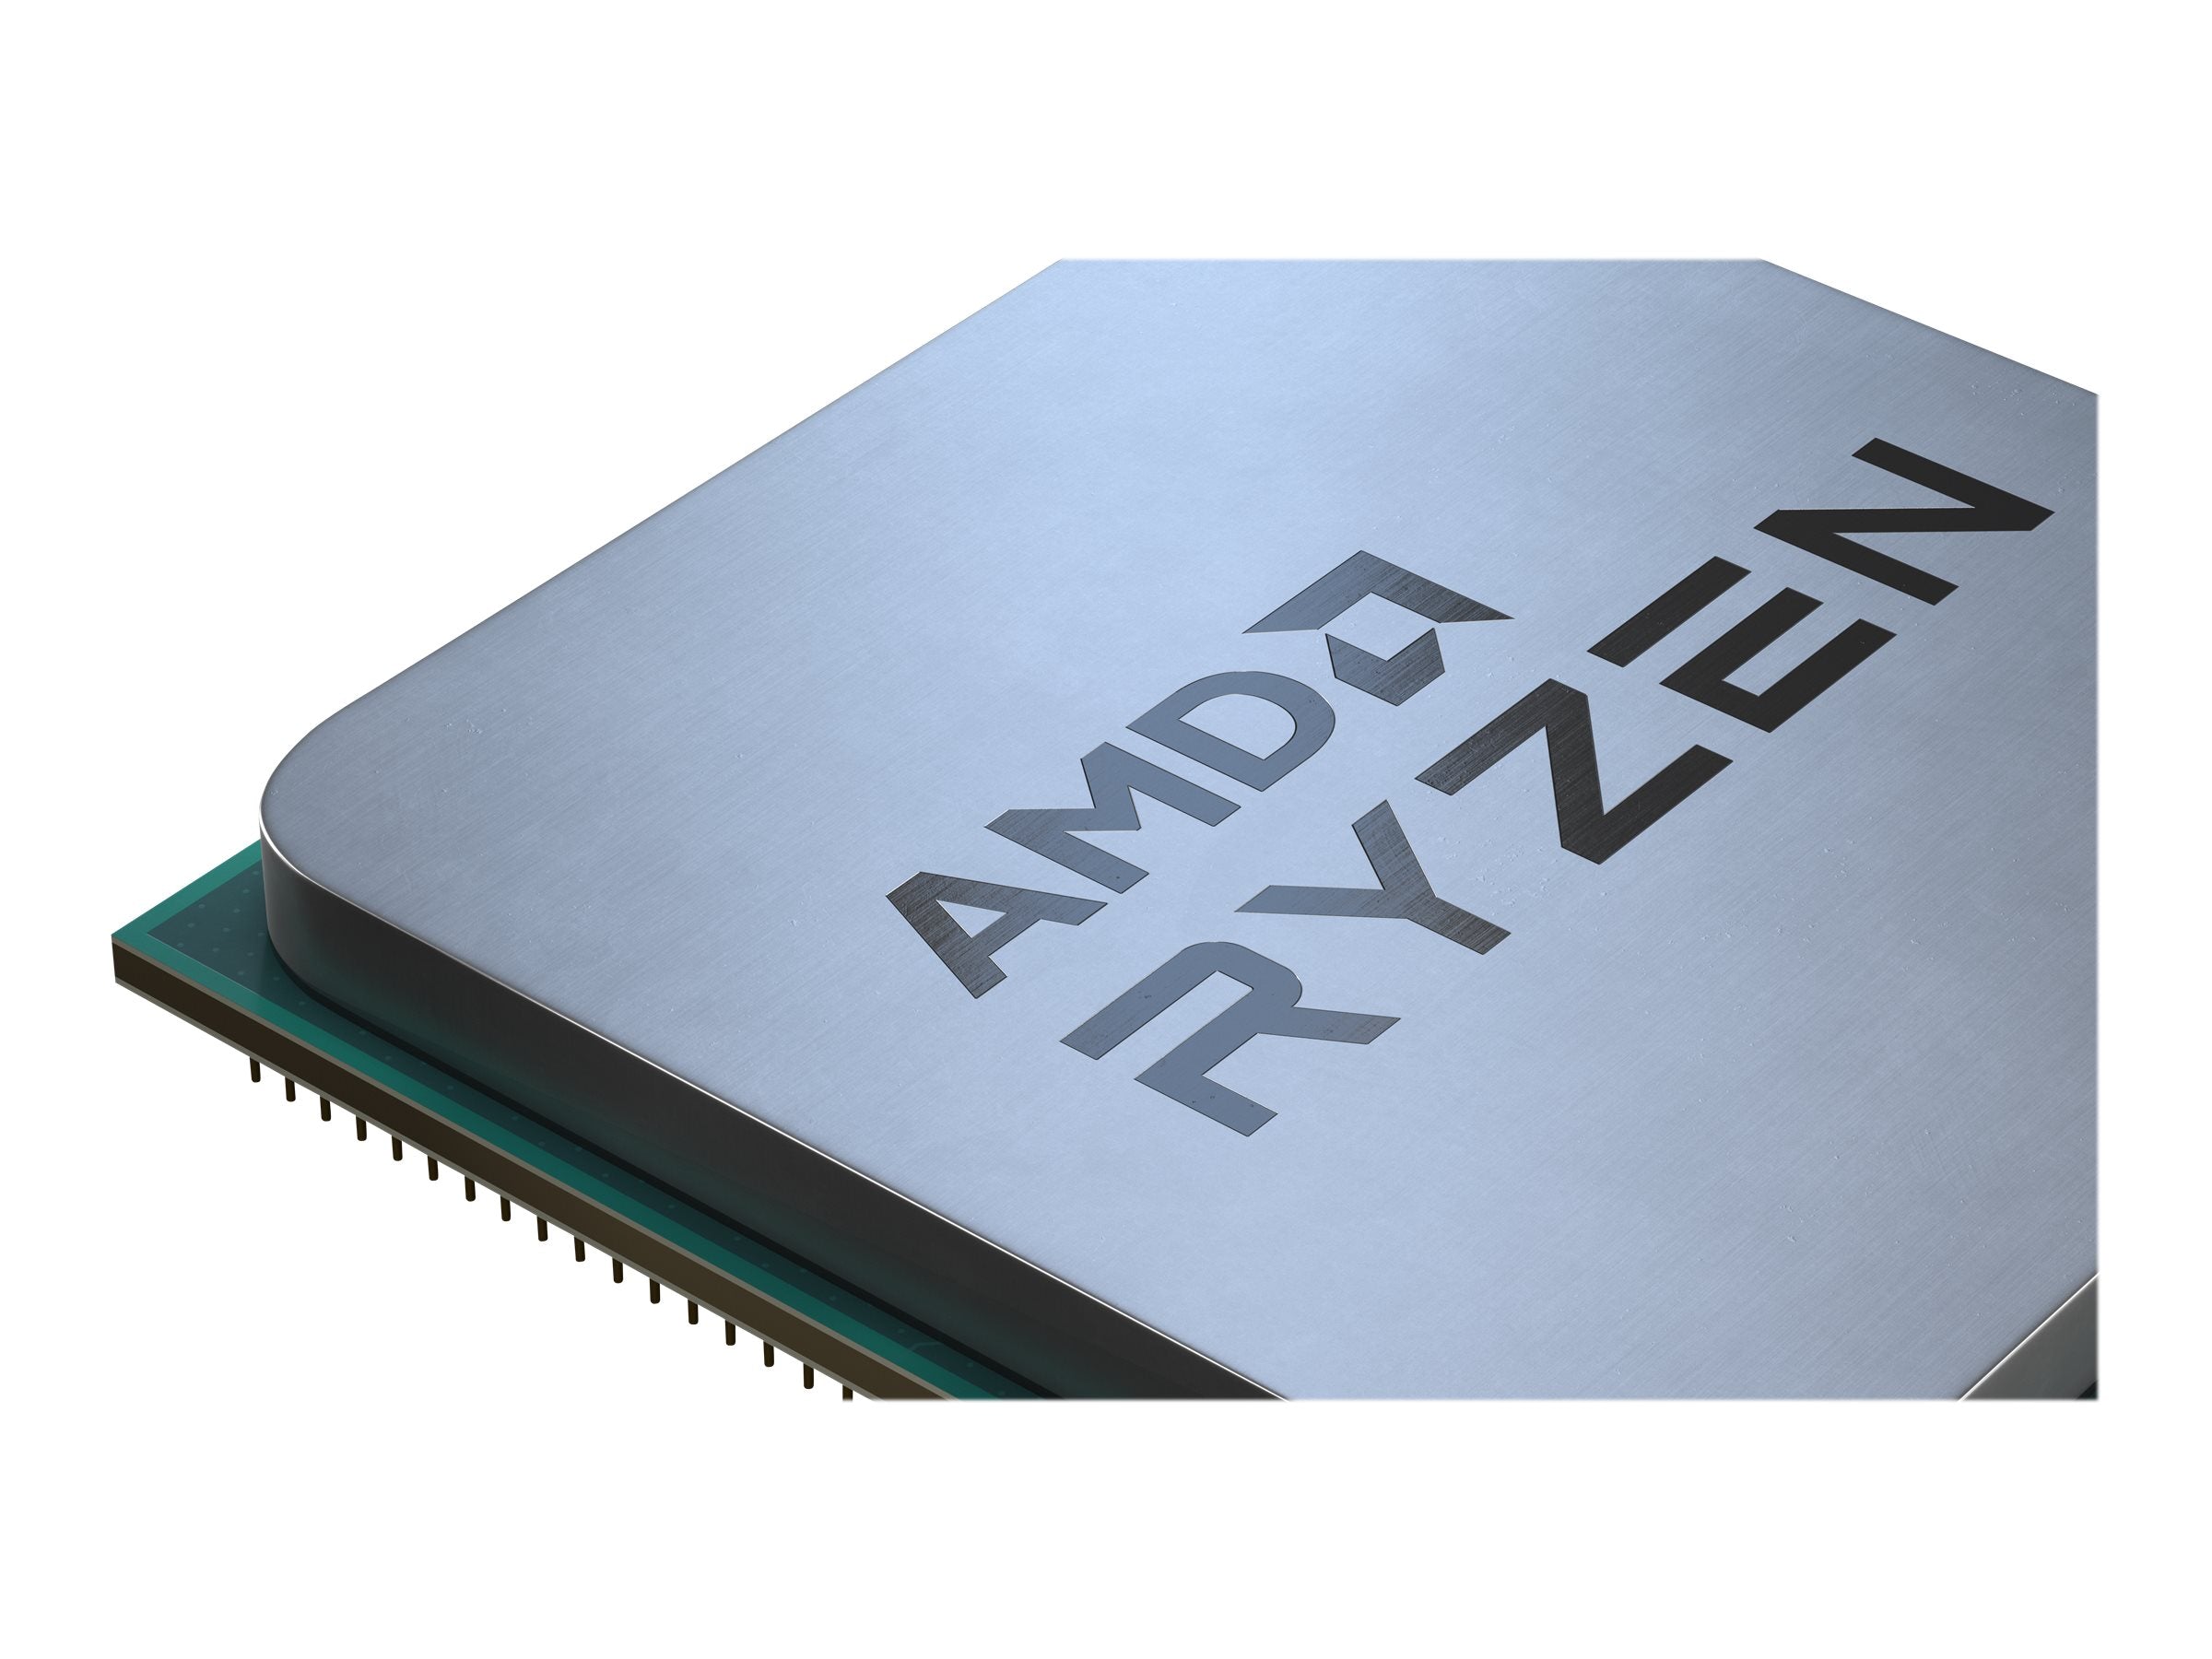 AMD CPU Ryzen 5 3600 3.6GHz 6 kerner  AM4 AMD